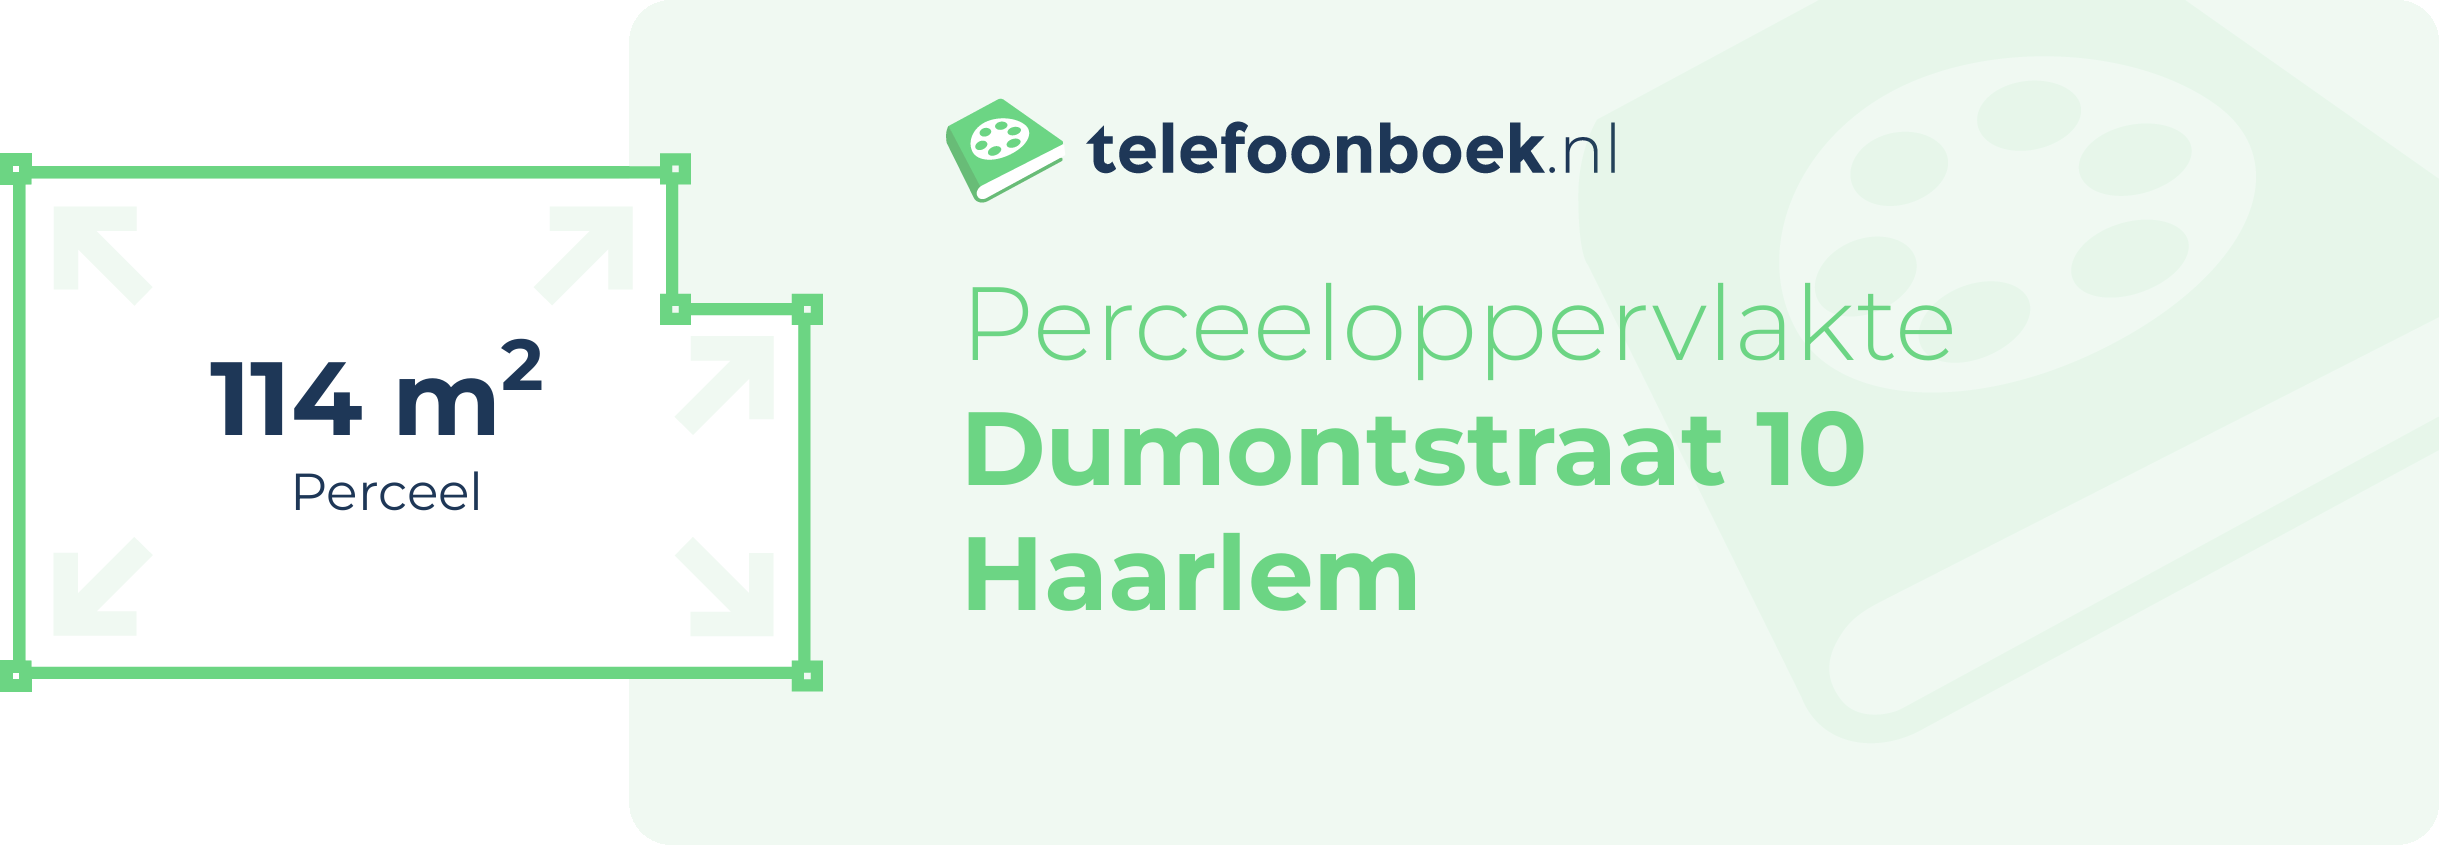 Perceeloppervlakte Dumontstraat 10 Haarlem